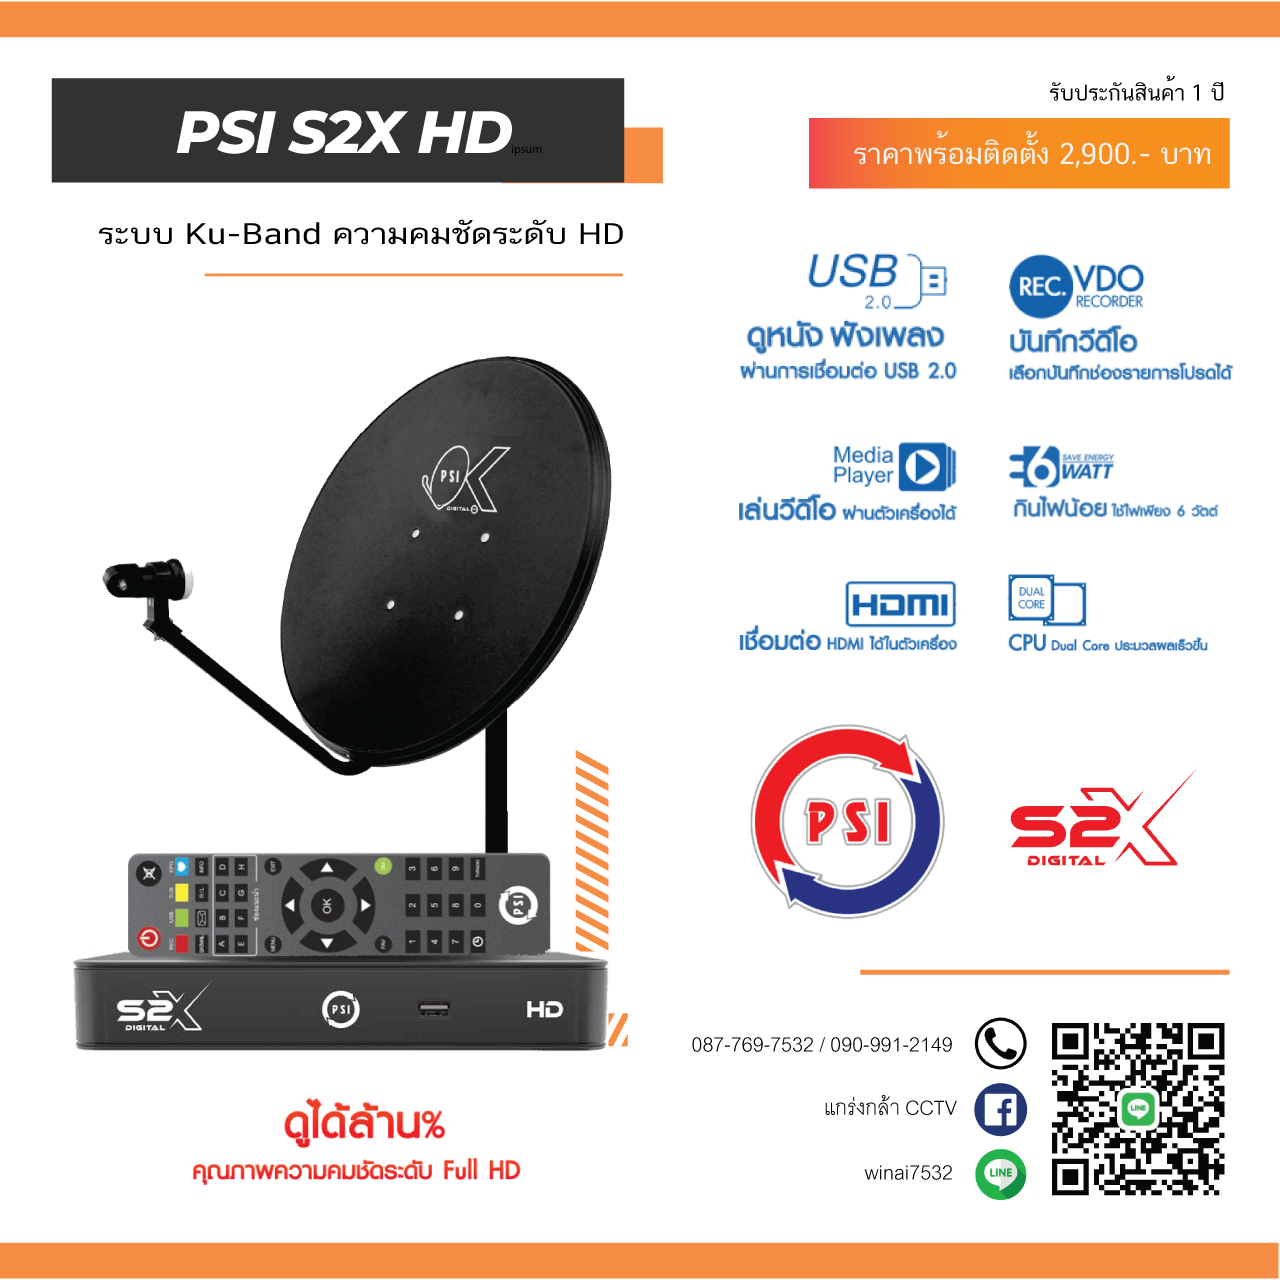 01.PSI-S2X-HD-Ku-Band